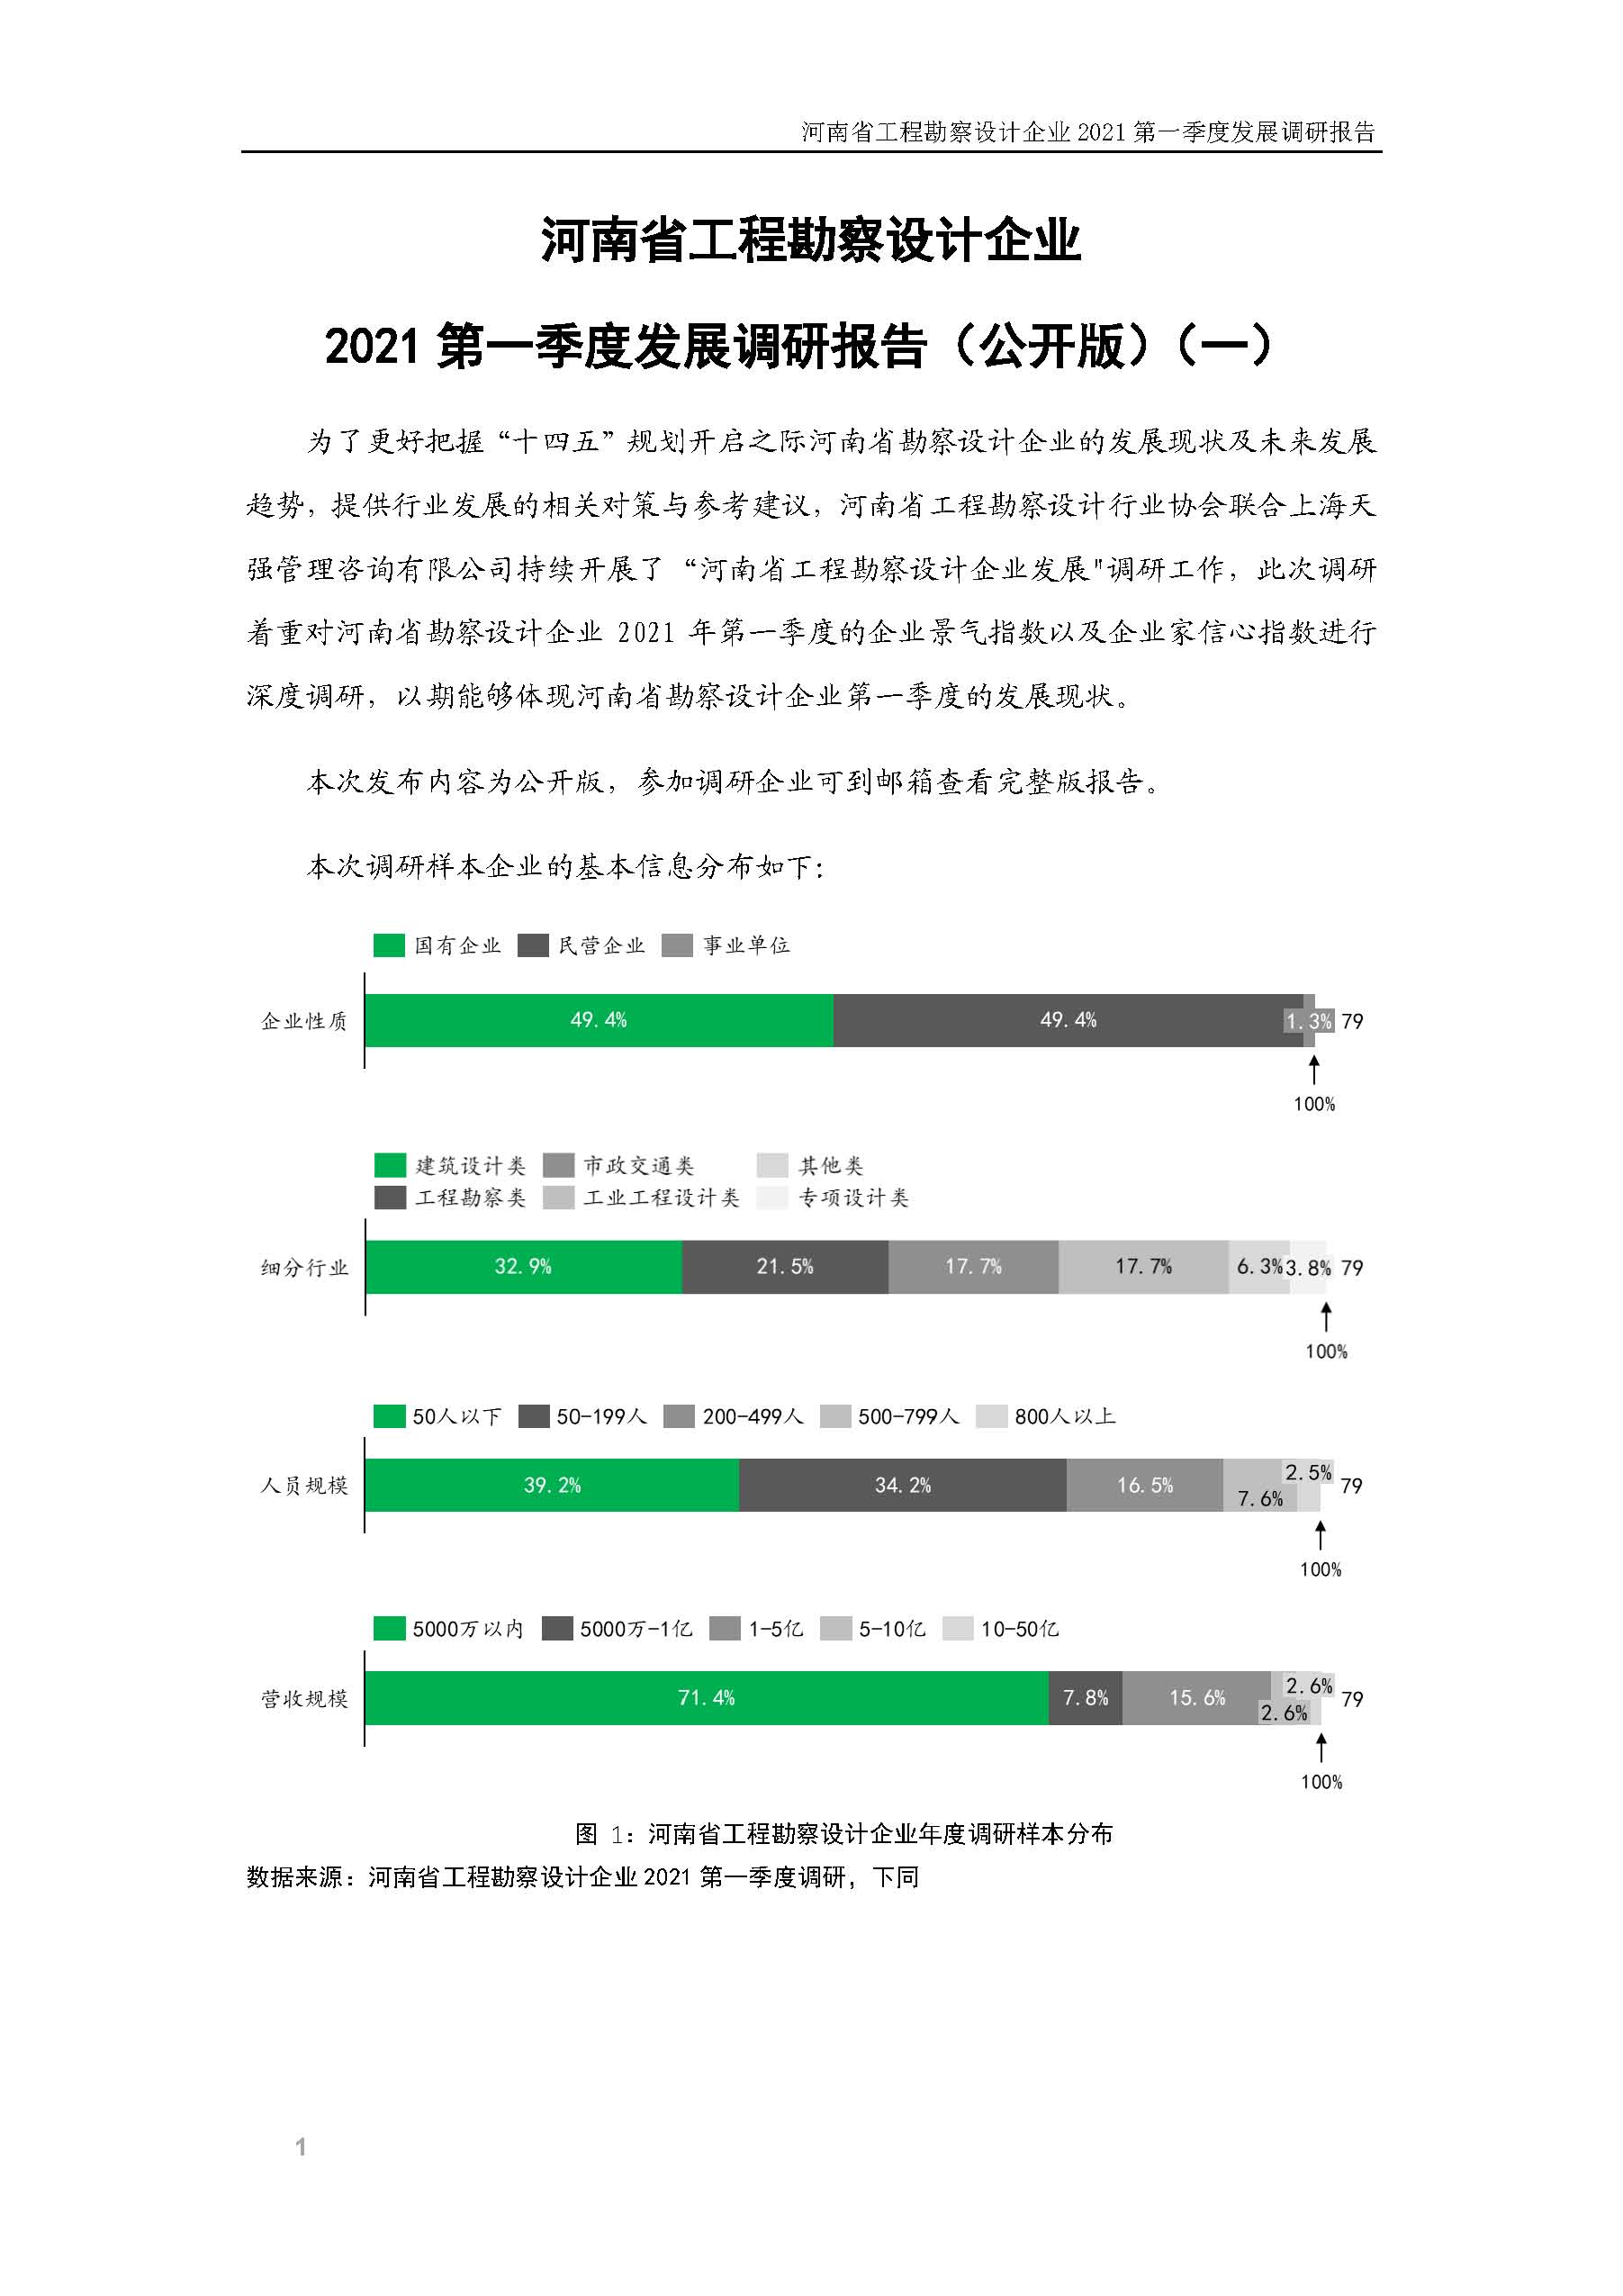 河南省工程勘察设计企业2021第一季度发展调研报告（一）_页面_2.jpg